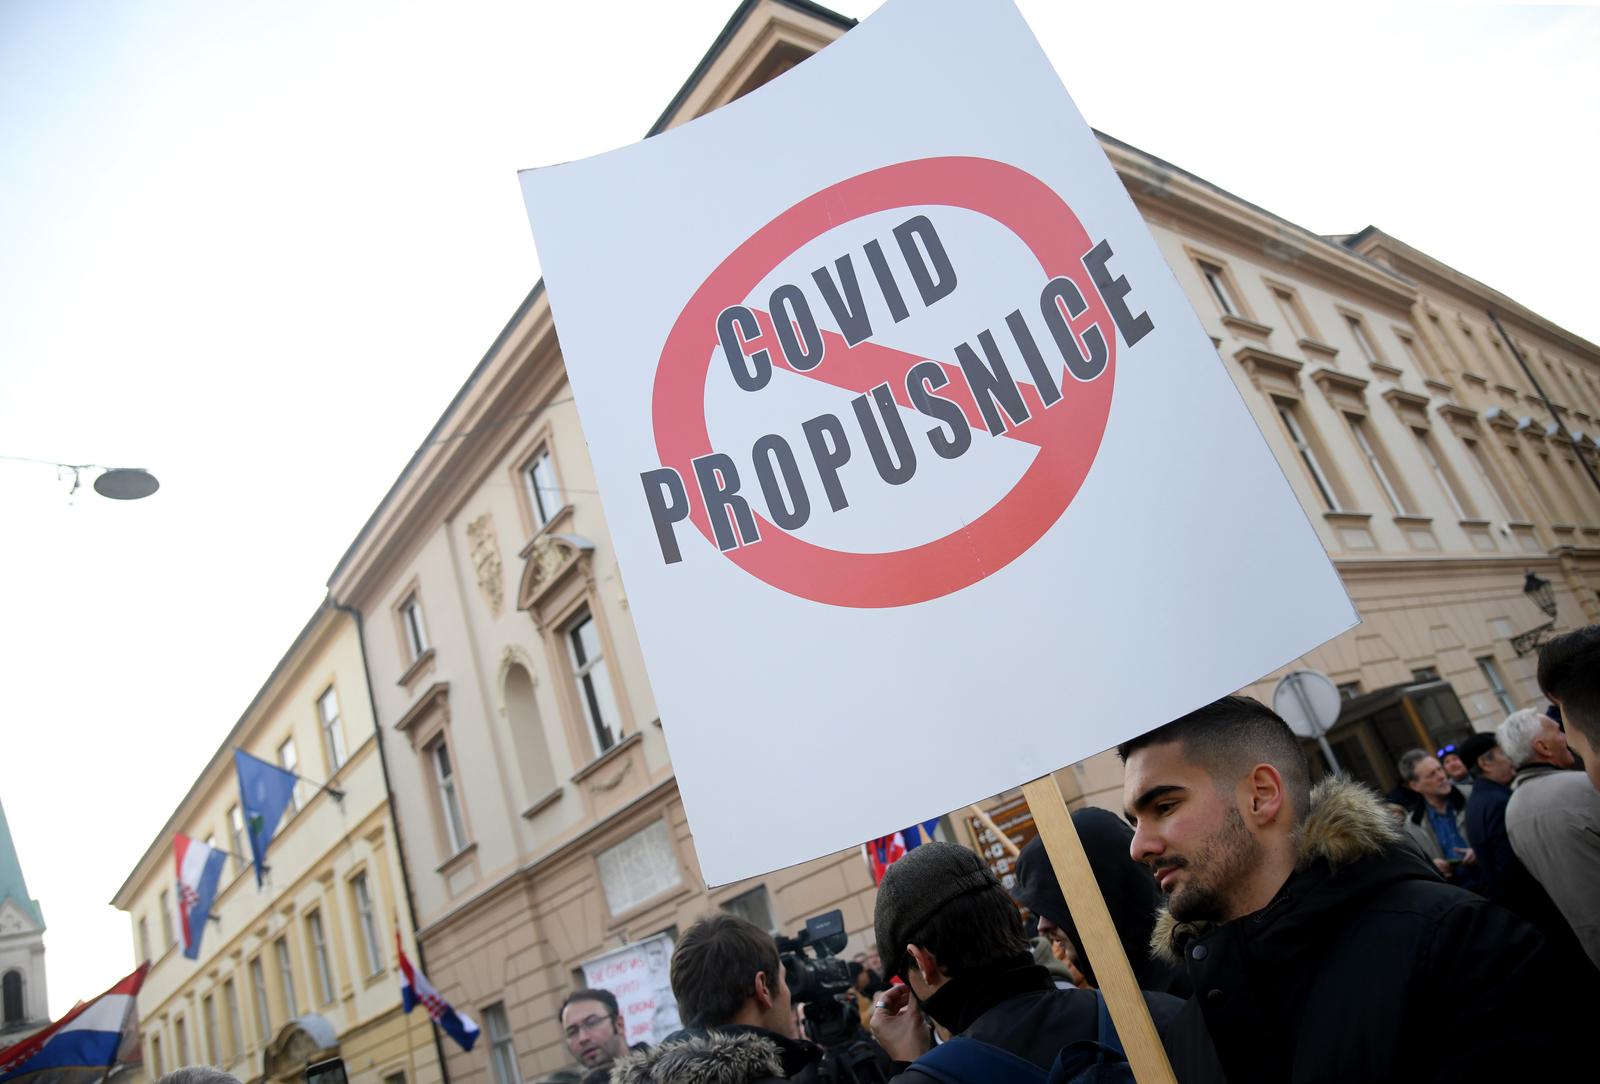 13.11.2021. Zagreb - Udruga Vigilare organizira je prosvjed za ukidanje COVID potvrda na cijelom terirtoriju RH i izglasavanje zakona kojim se zabranjuje ponovno uvodjenje istih